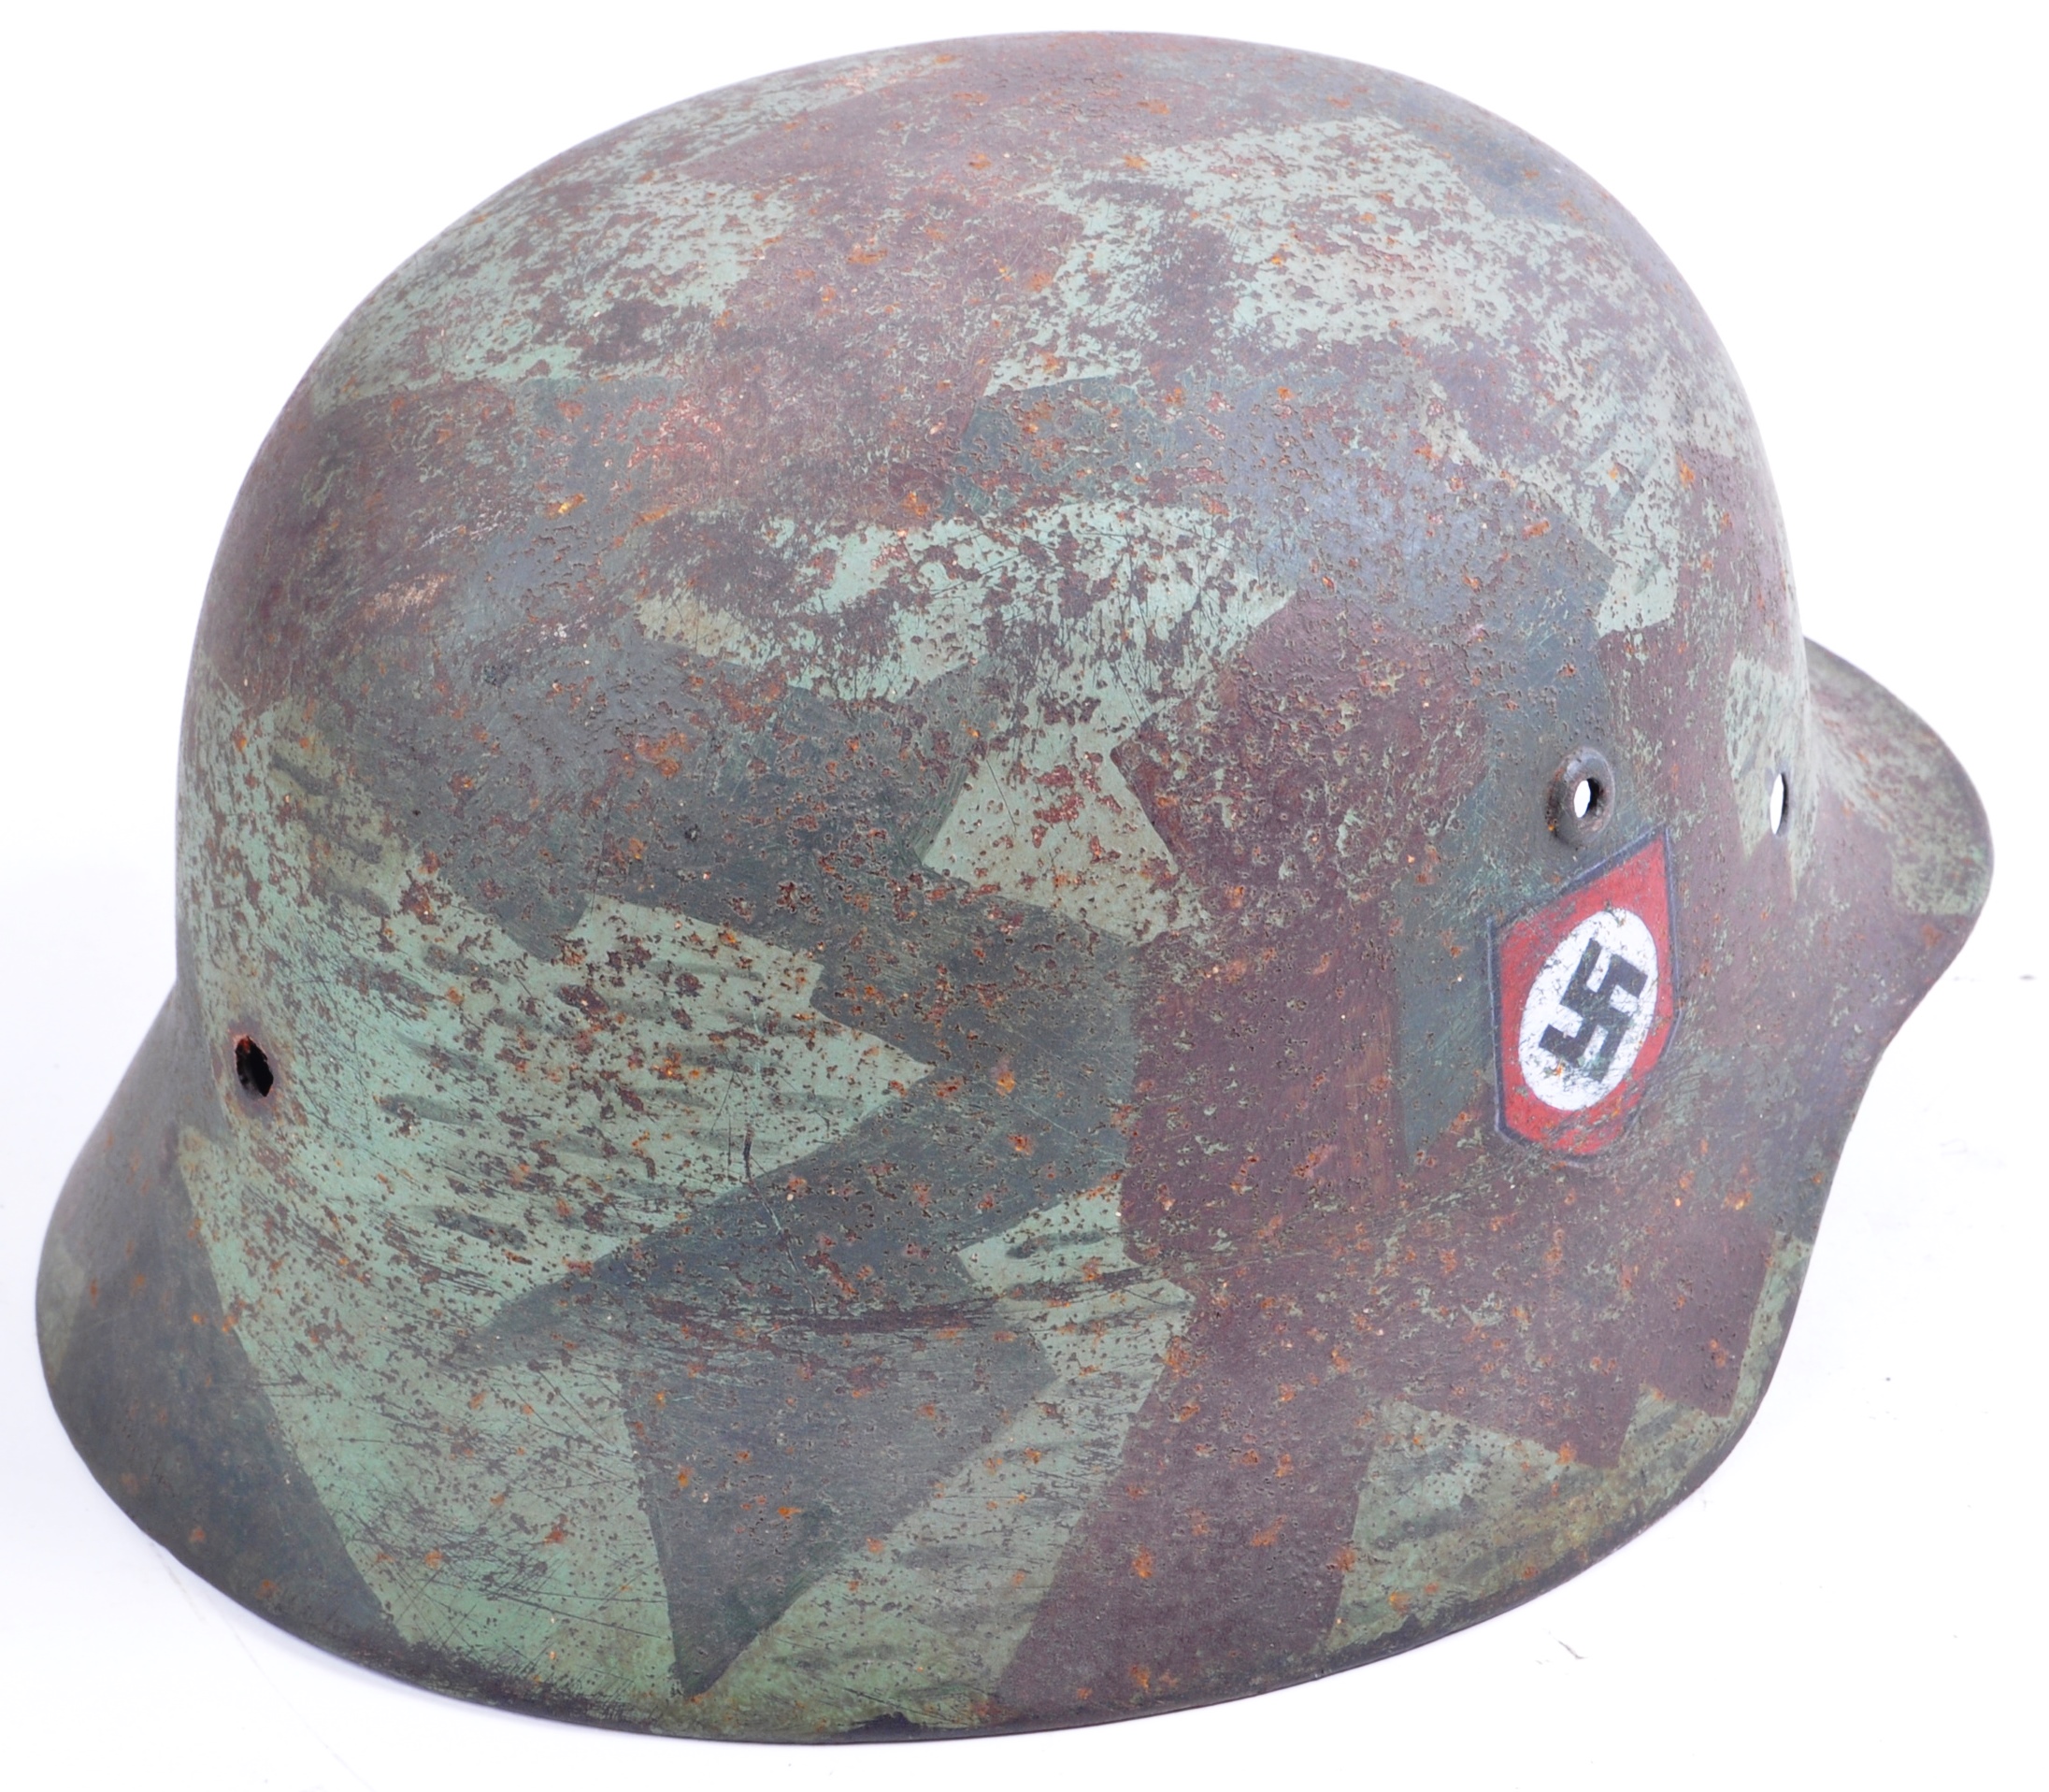 WWII SECOND WORLD WAR THIRD REICH GERMAN M35 HELMET - Image 3 of 8